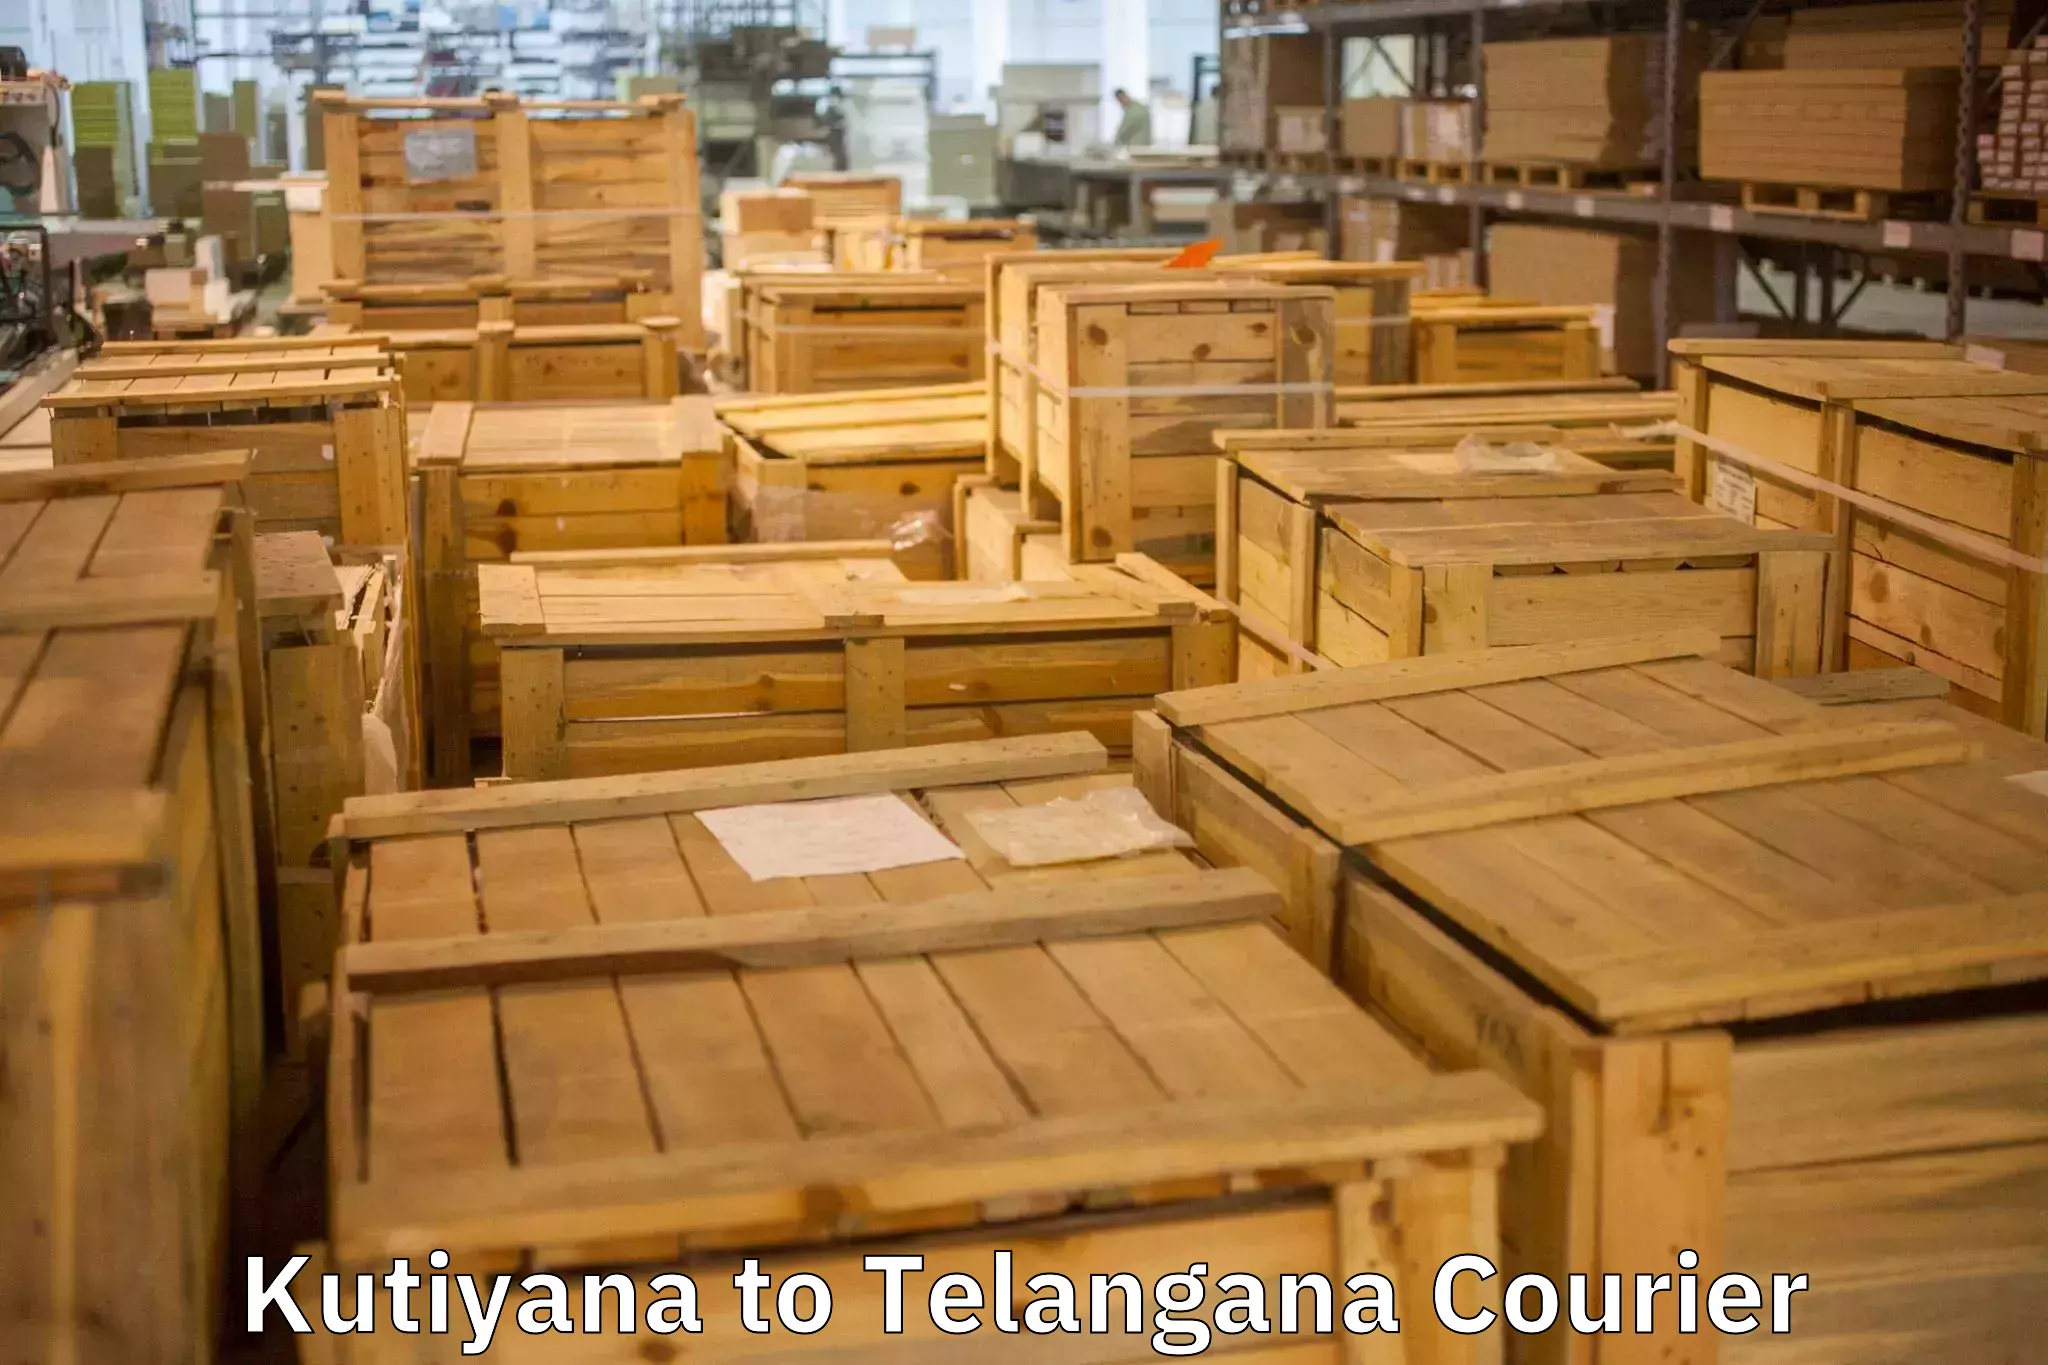 Household goods transport service Kutiyana to Bhainsa